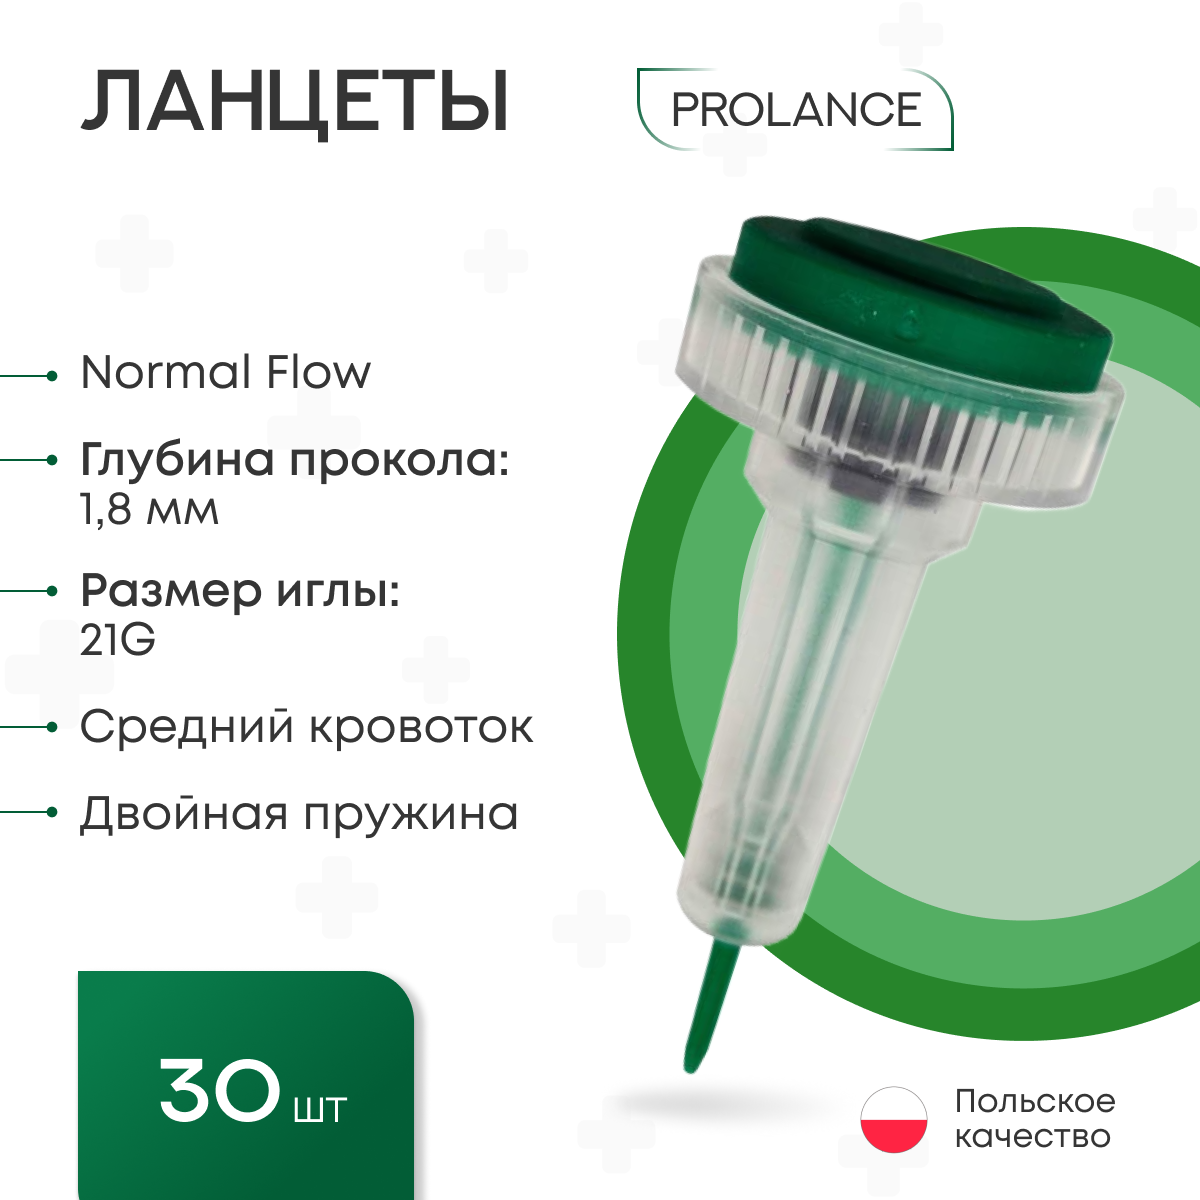 Ланцеты Prolance Normal Flow для капиллярного забора крови 30 шт, глубина прокола 1,8 мм, зеленые